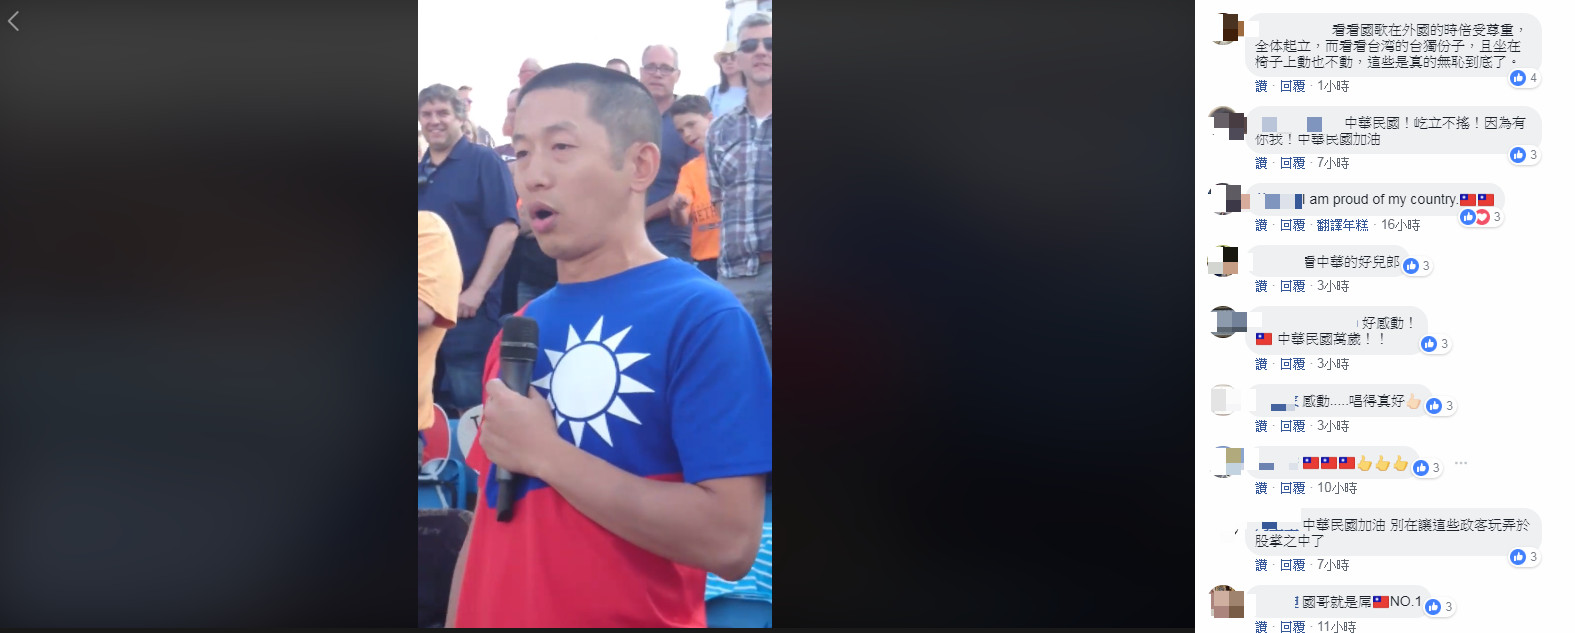 ▲男子在哈連盃場邊唱中華民國國歌。（圖／翻攝Honkbalweek Haarlem粉絲團）